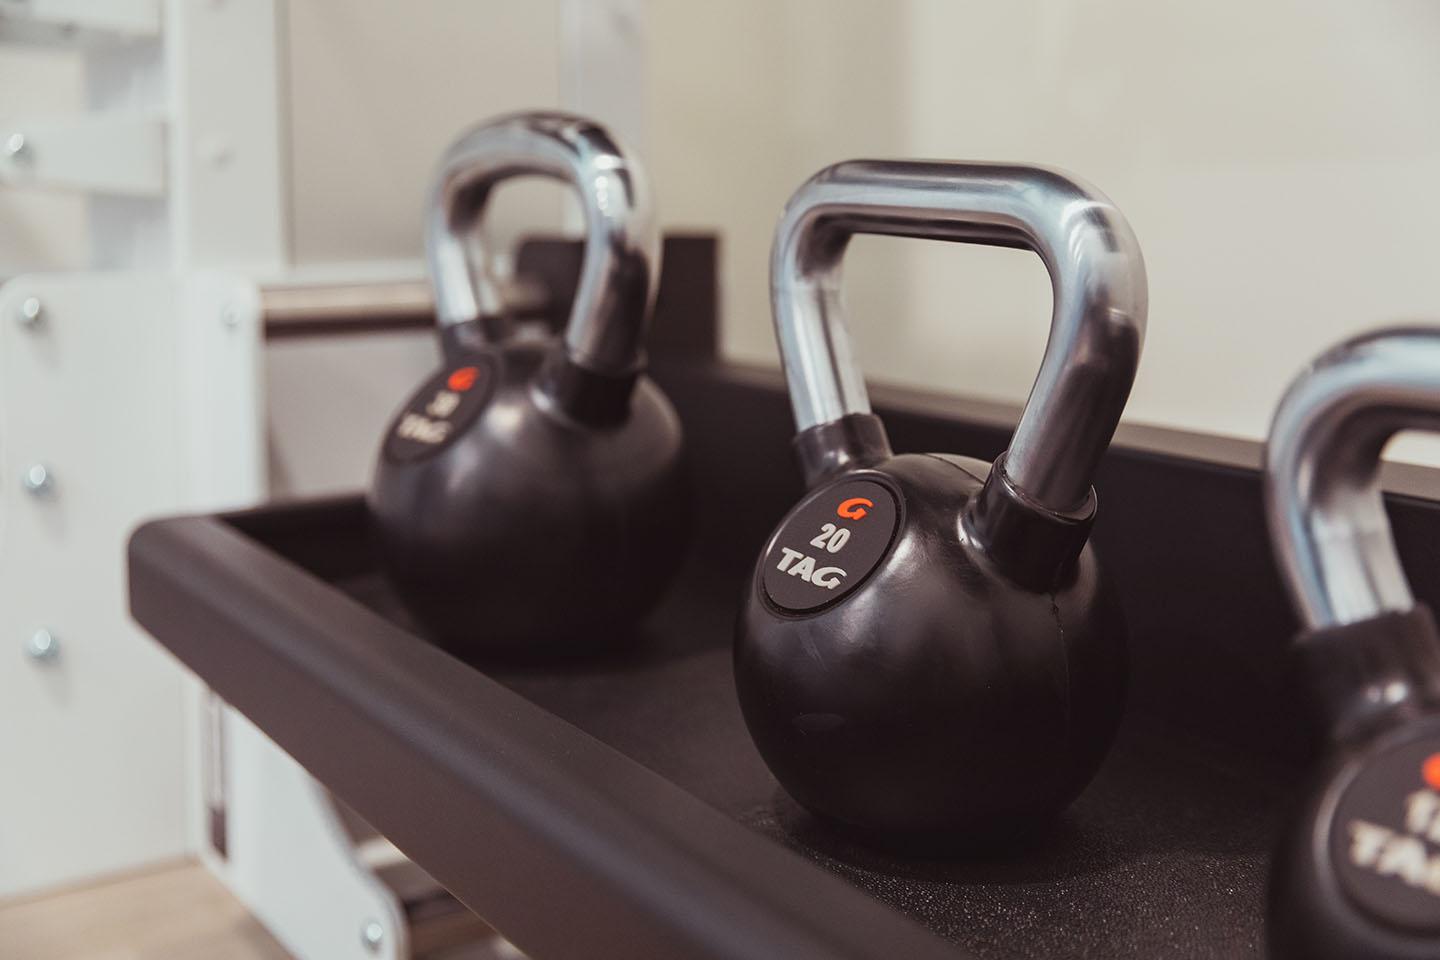 Fitness Center kettlebell weights